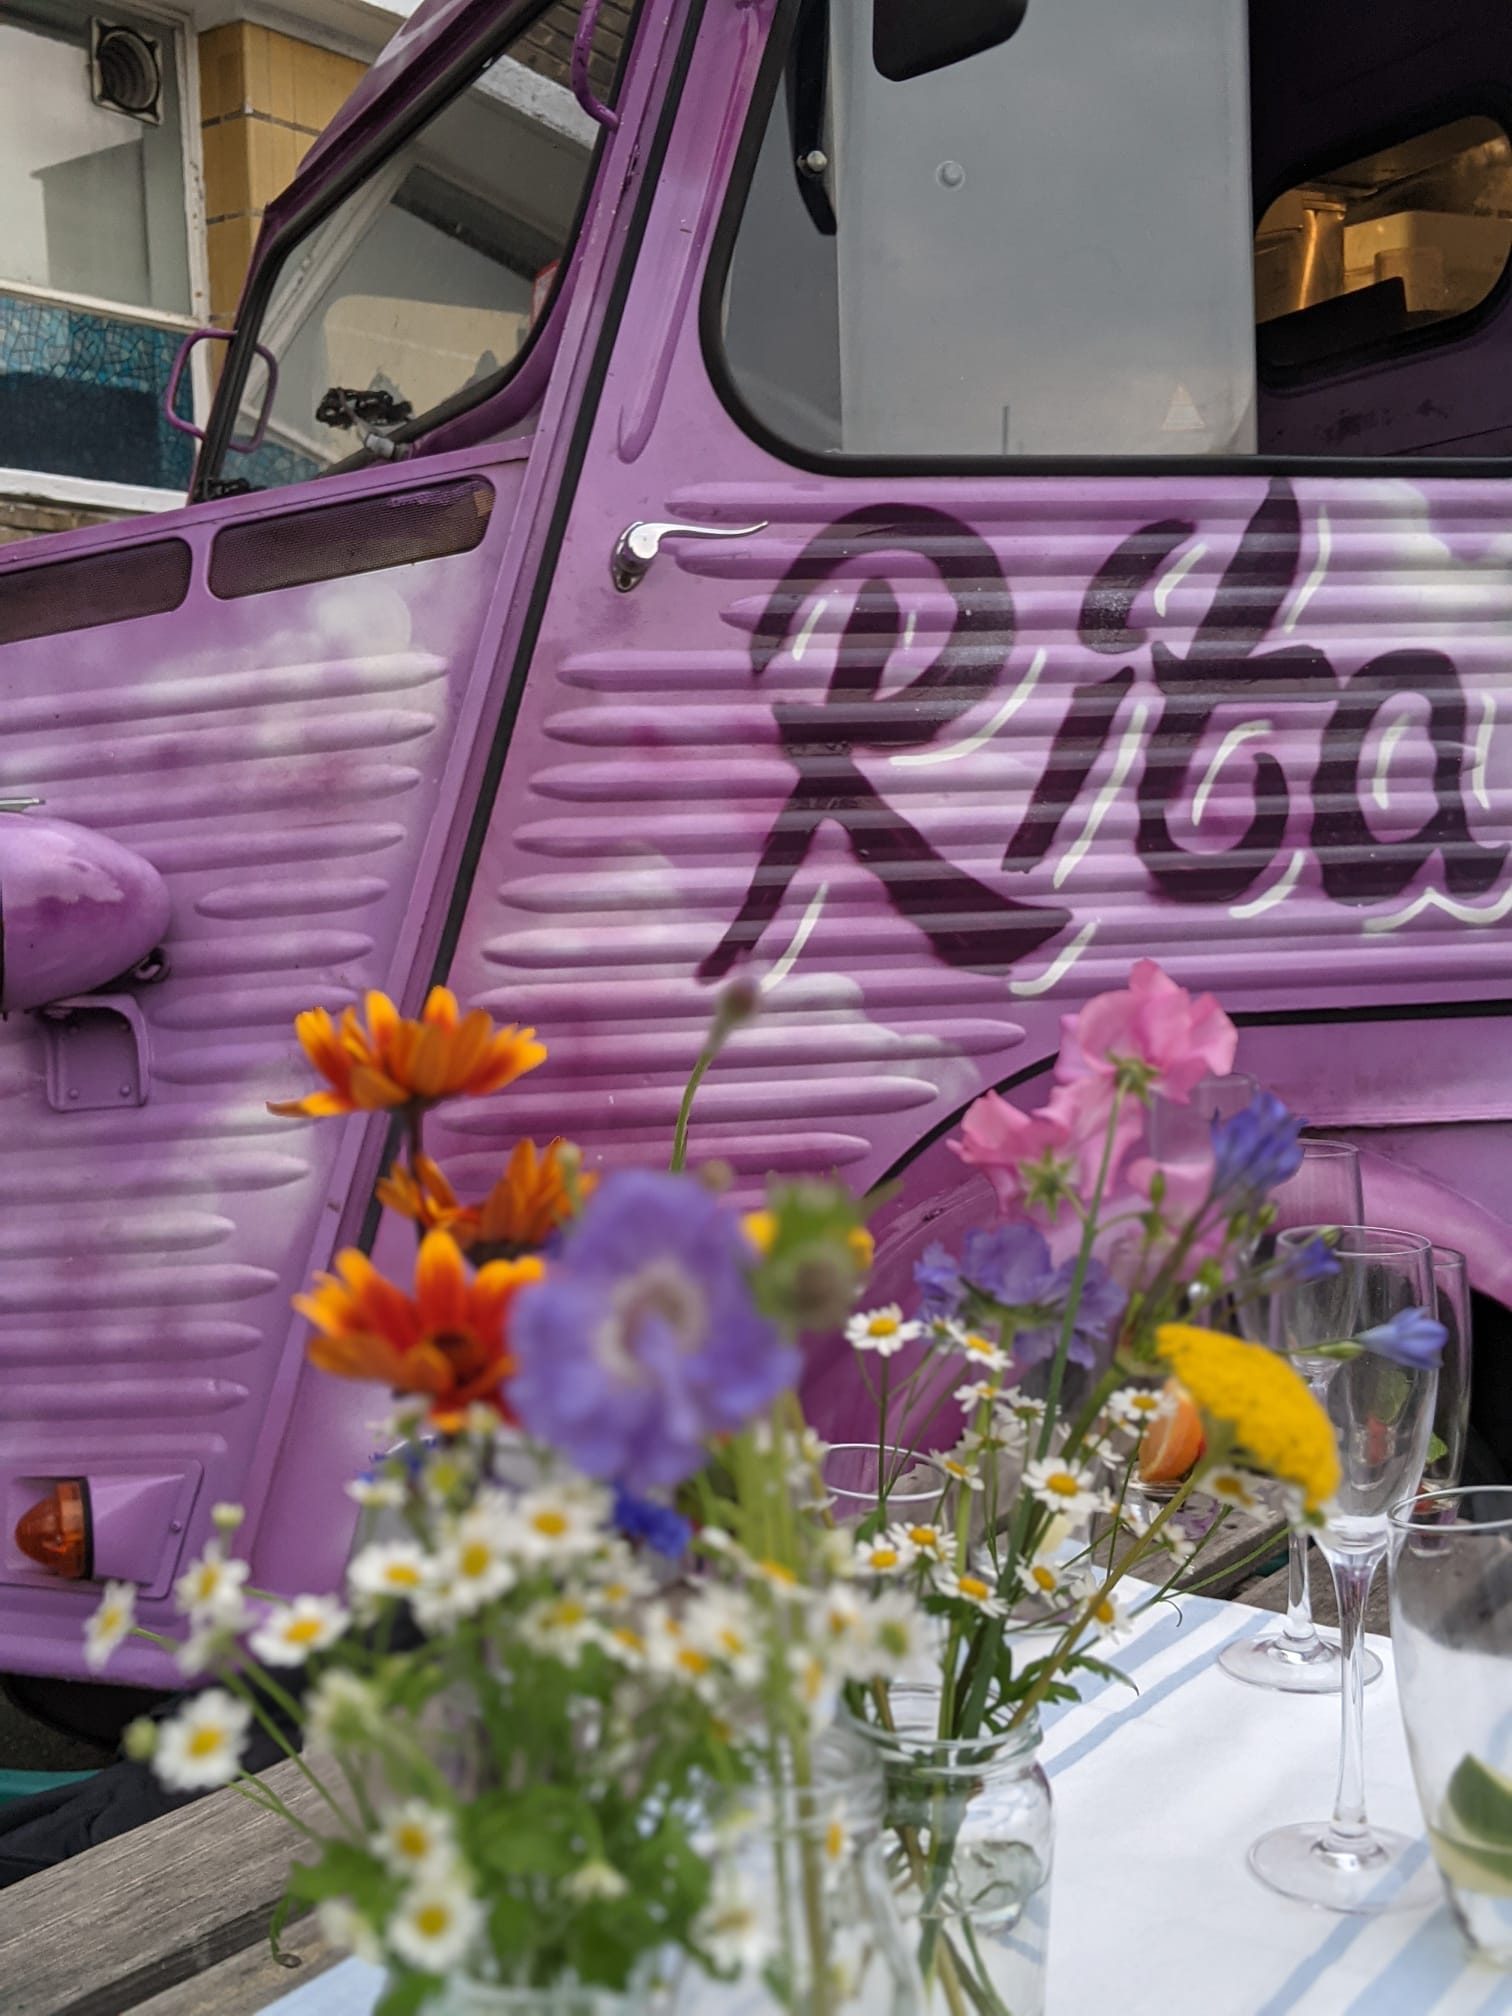 Purple van with flowers infront